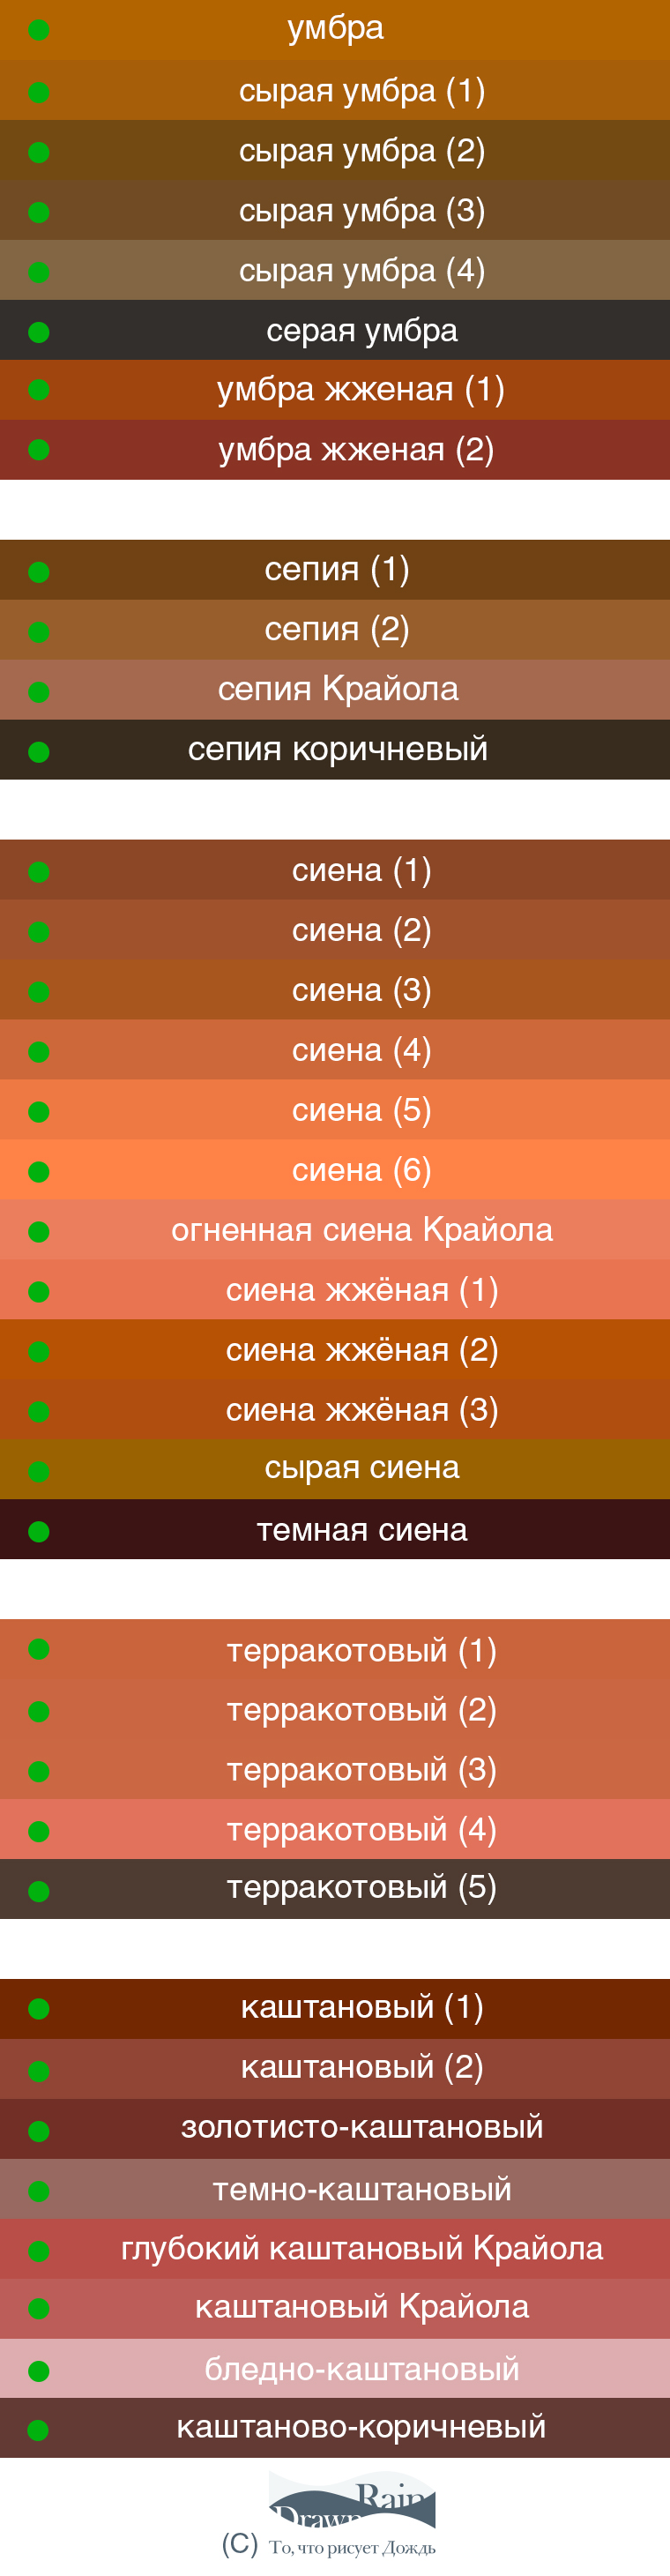 Список названий цветов, используемых в косметике